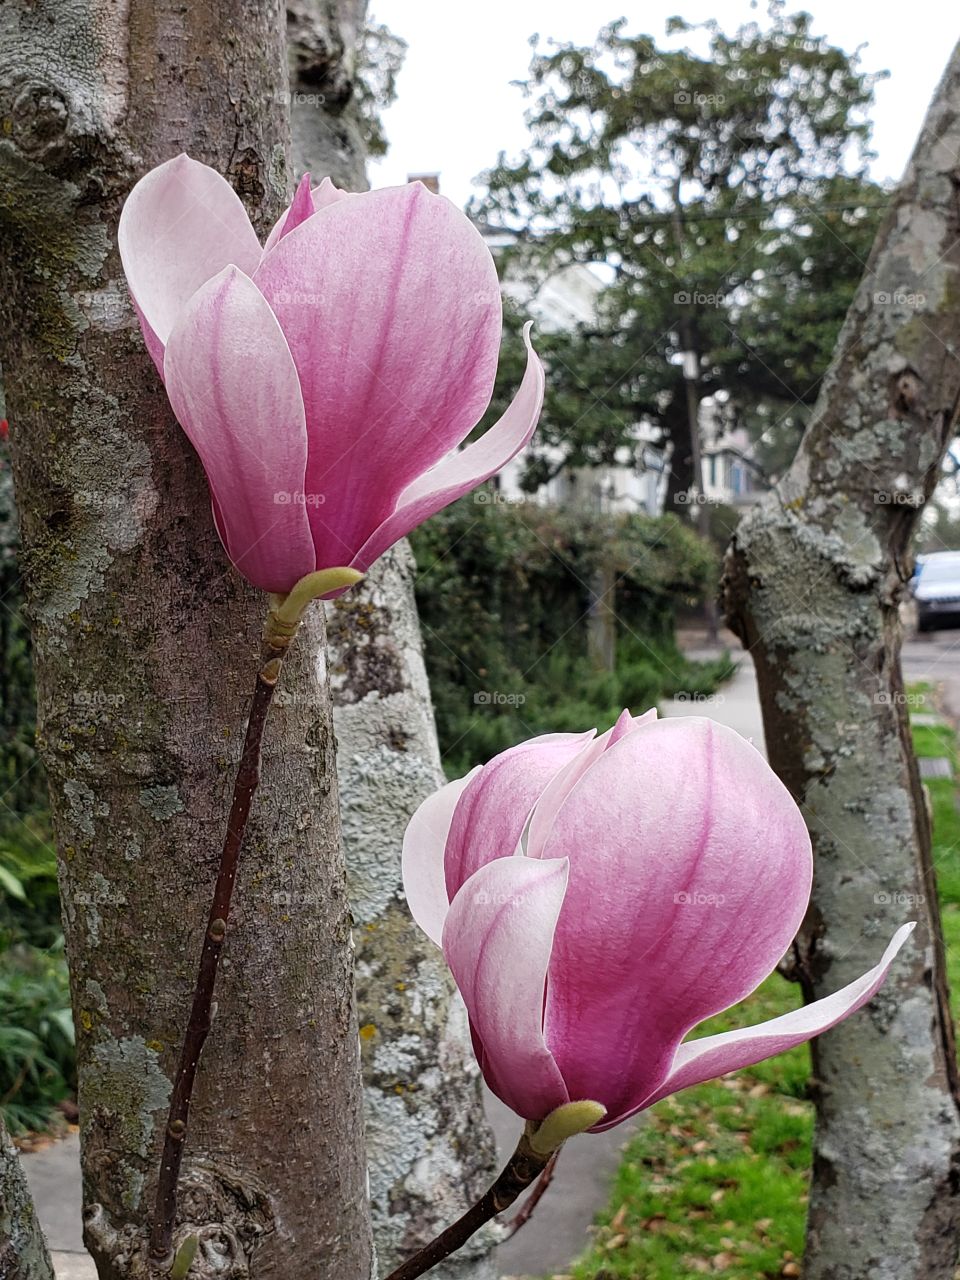 A pair of magnolias